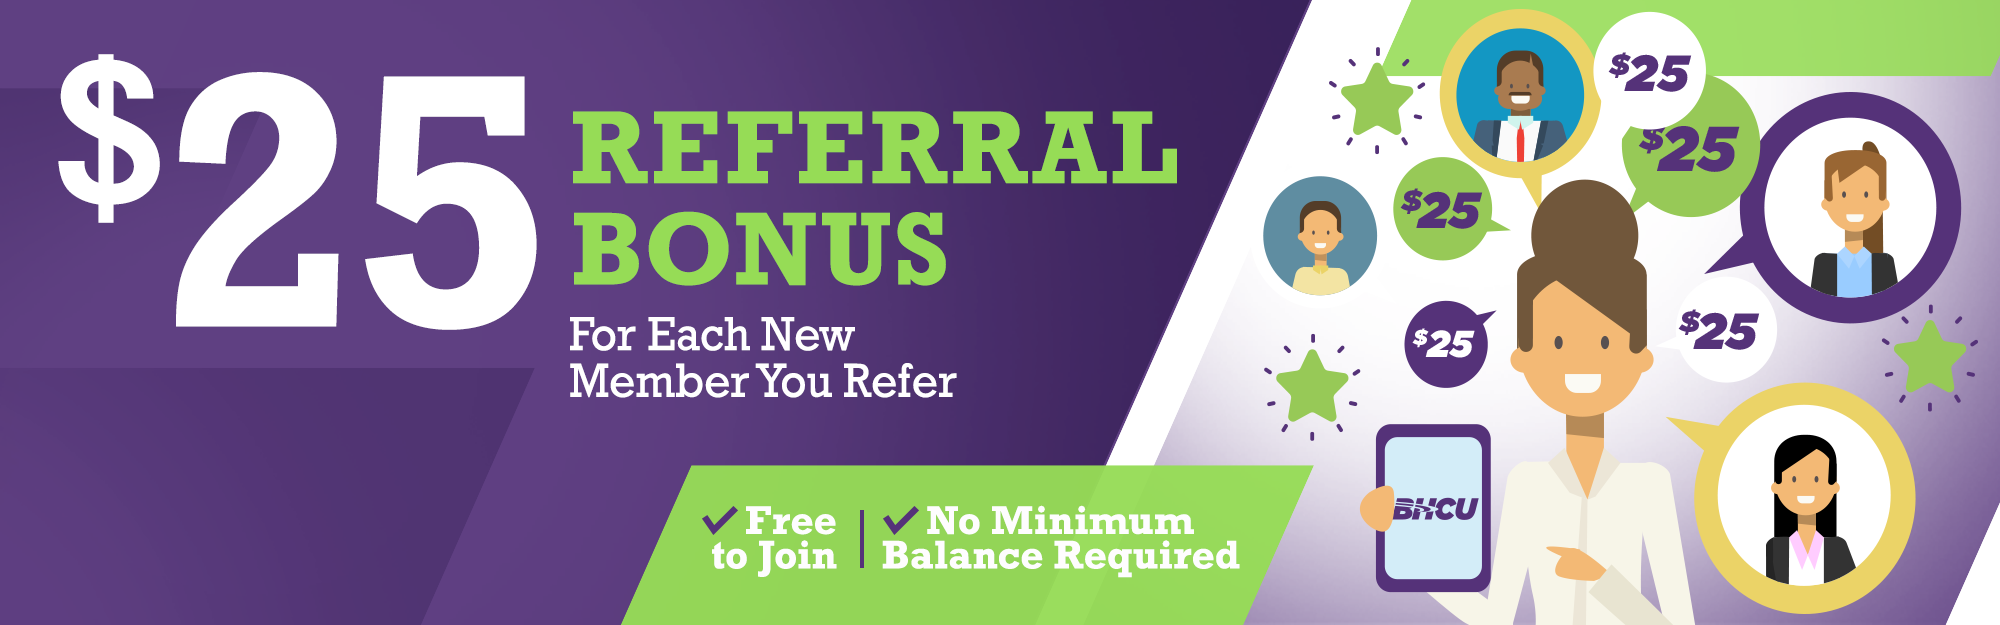 $25 referral bonus for each new member